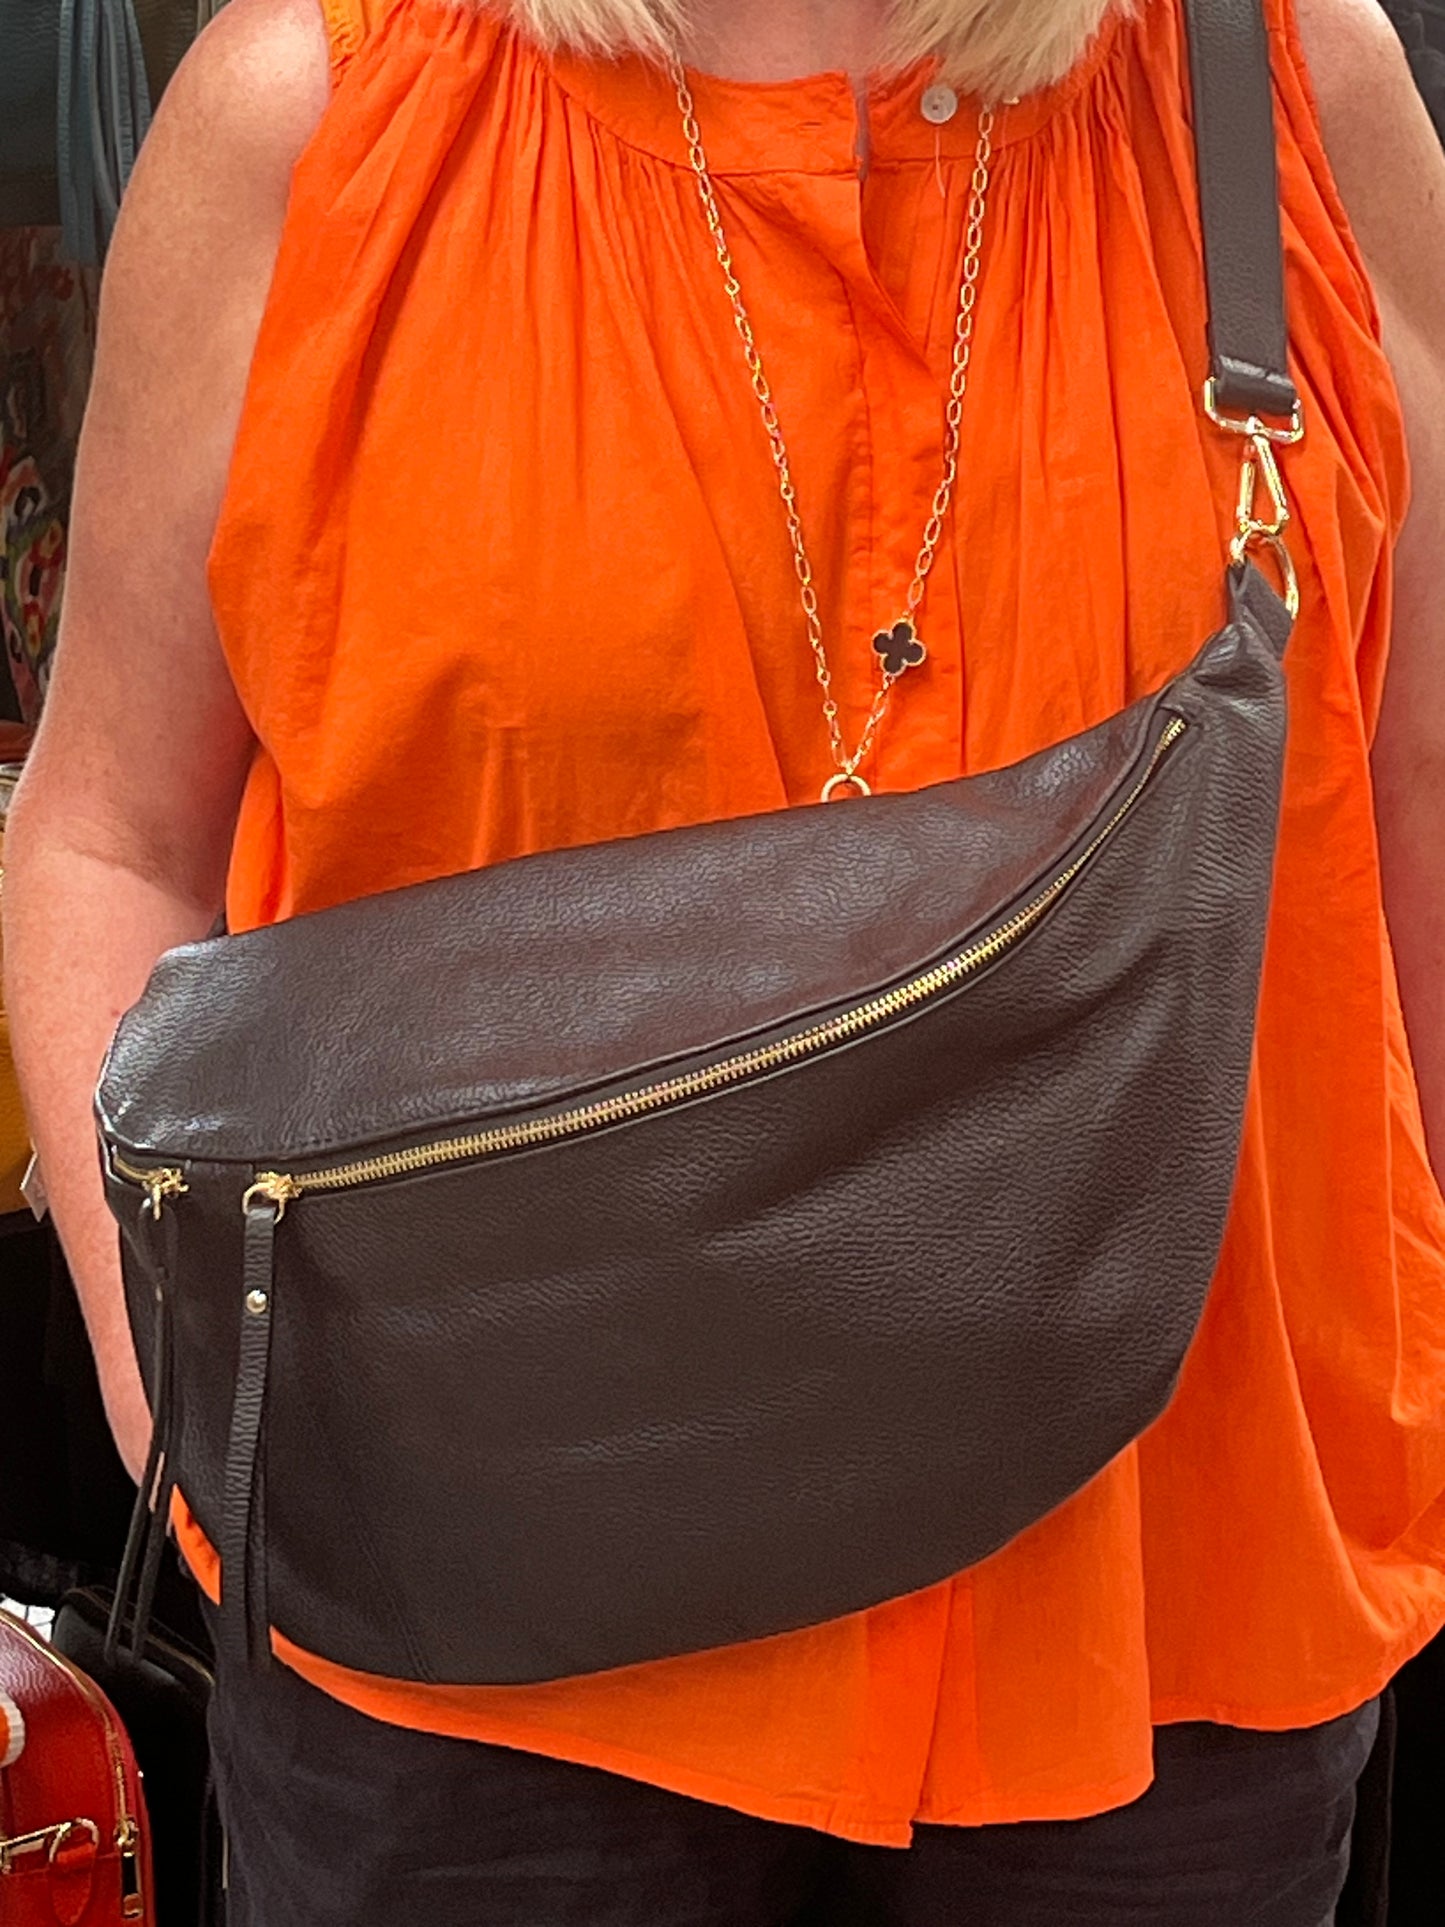 Giant Leather Bumbag Bag Handbag